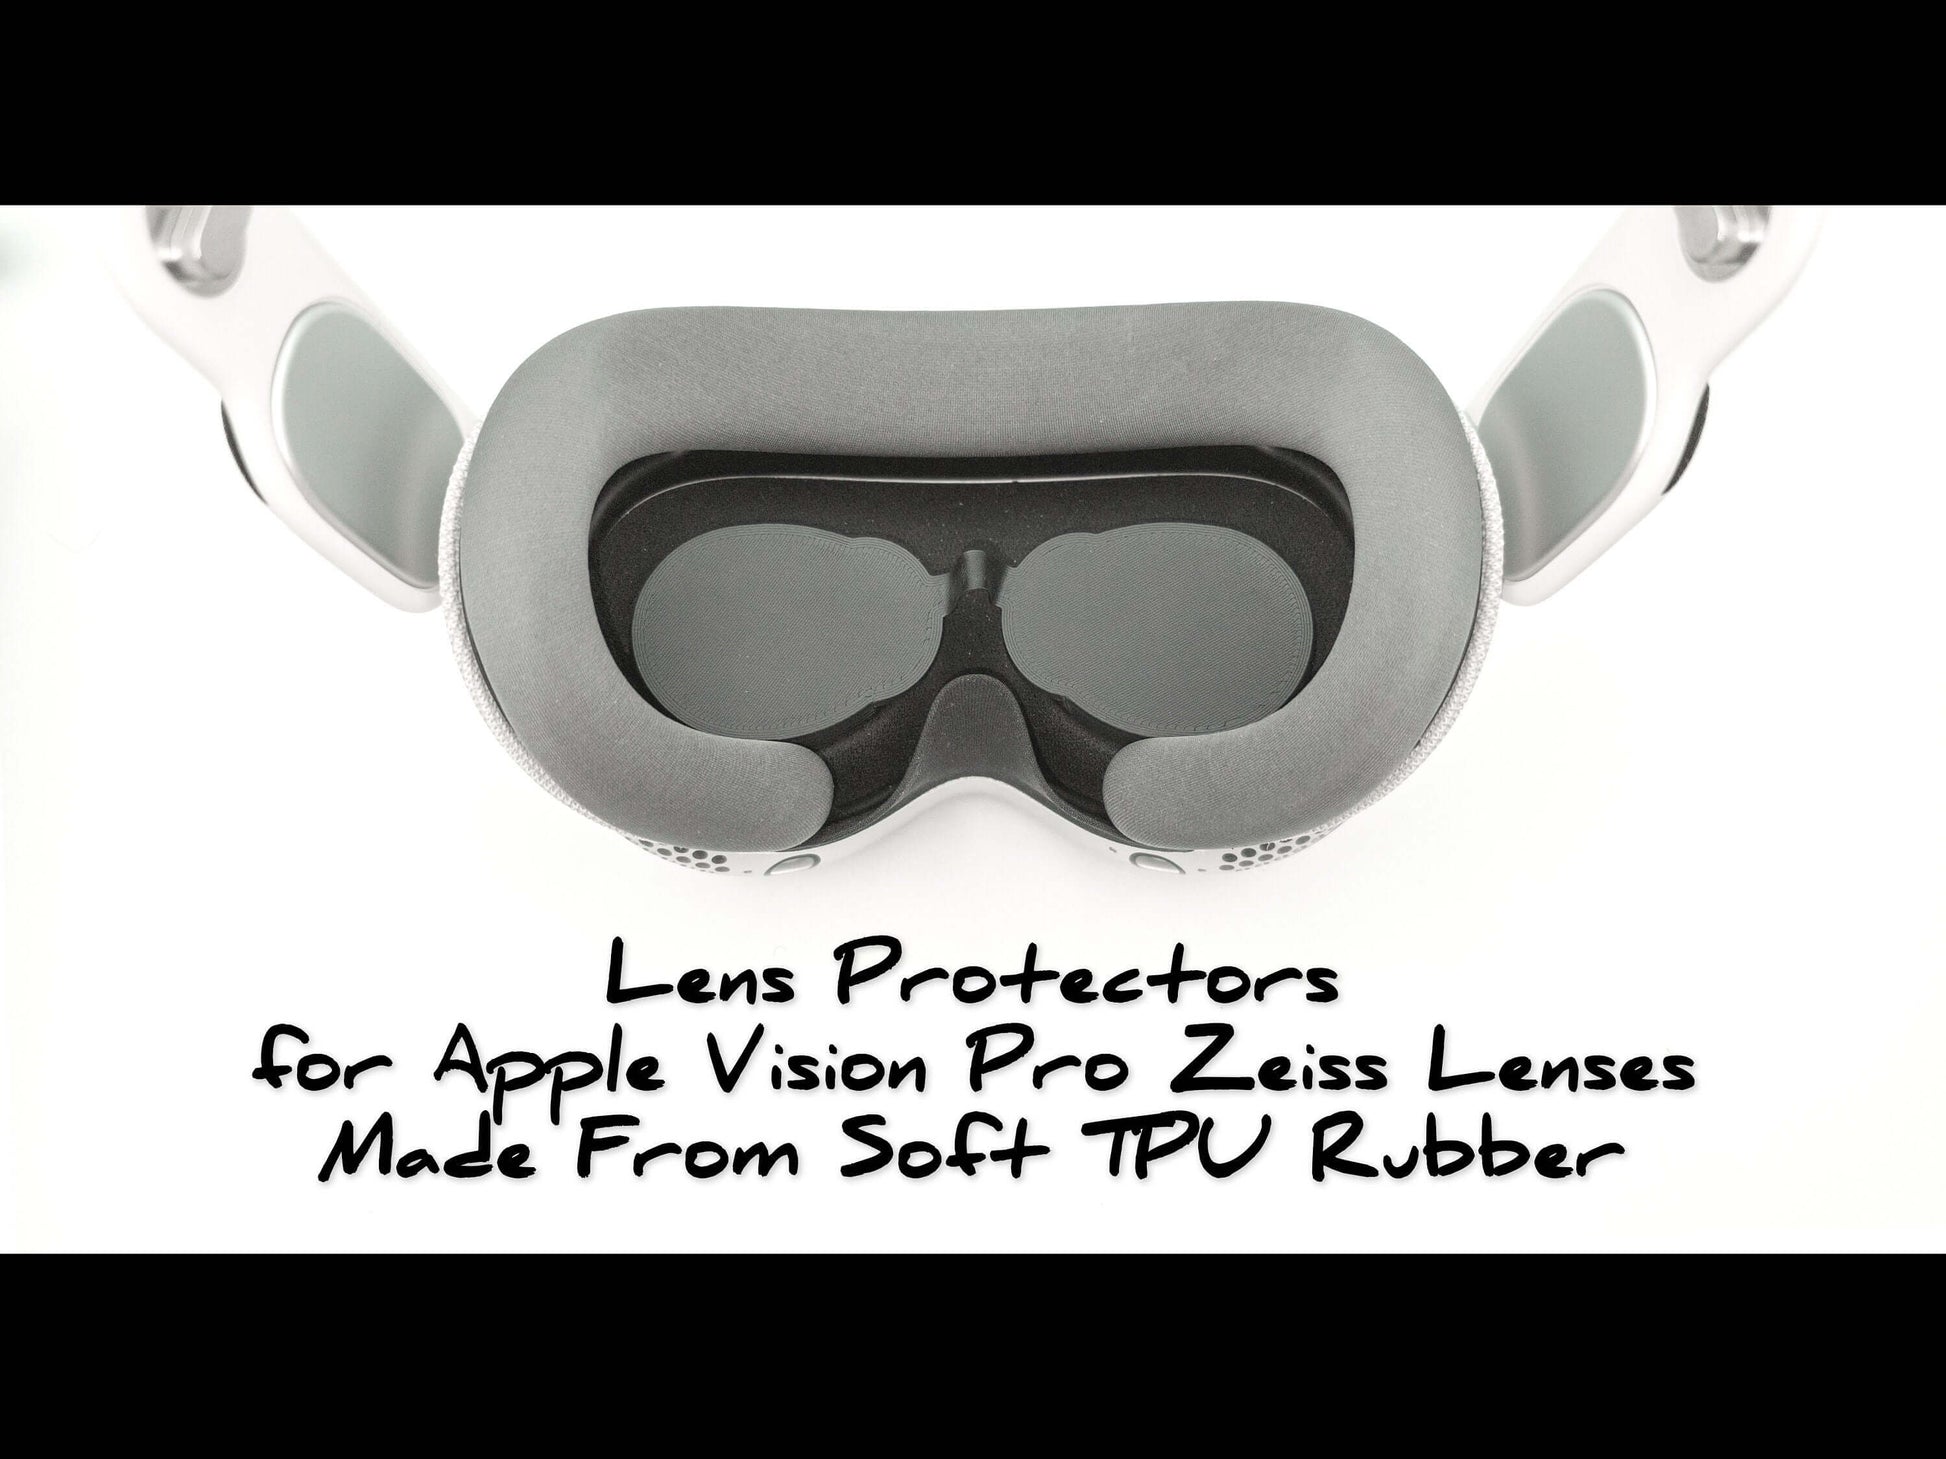 Apple Vision Pro Zeiss Lens Protectors